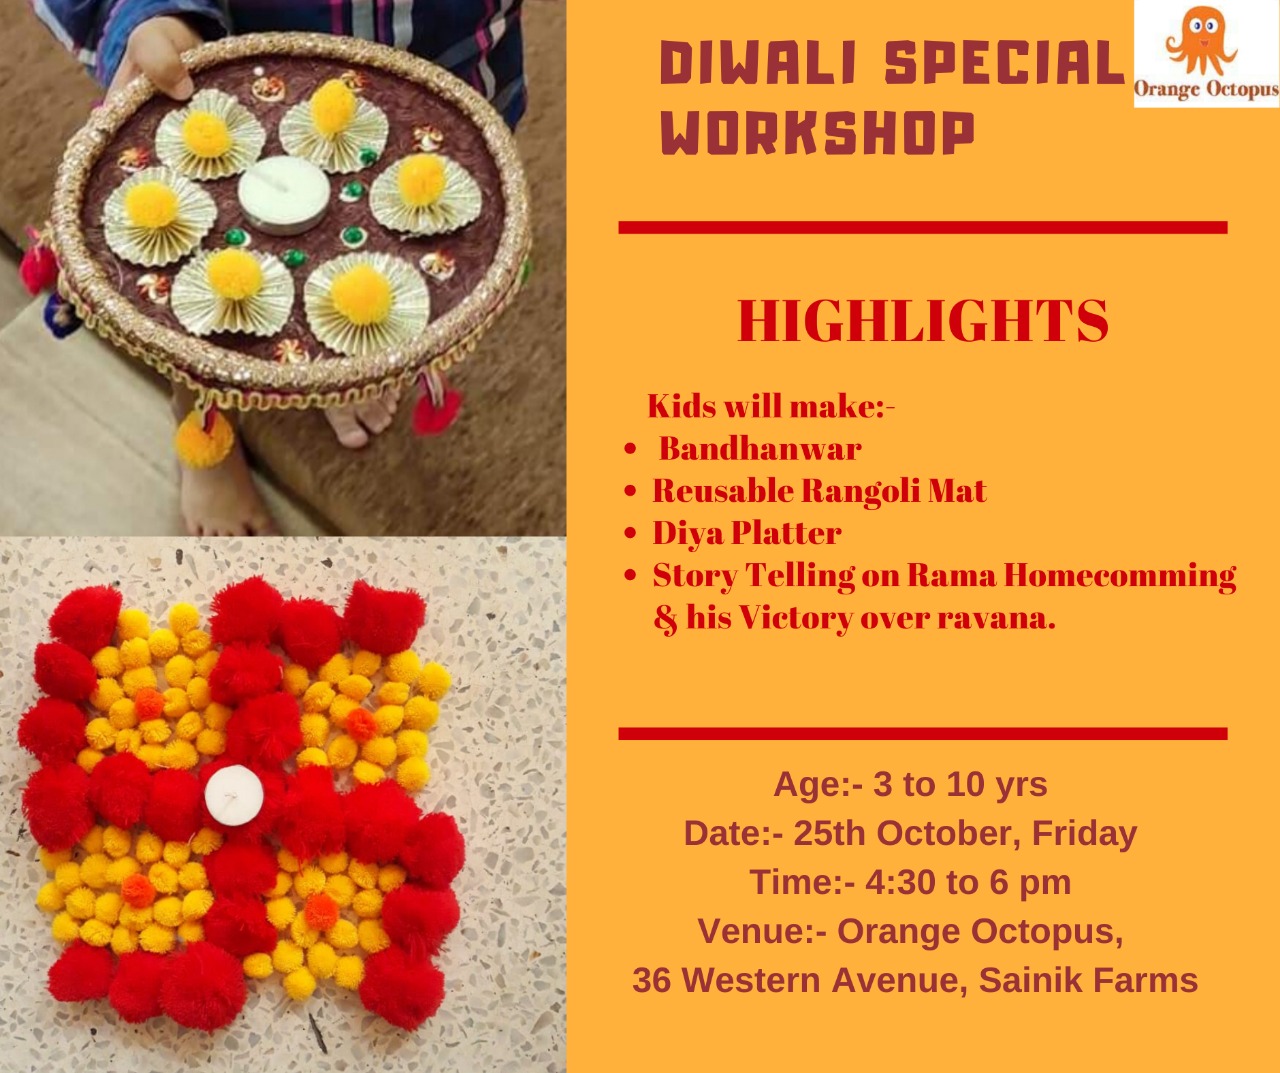 Diwali Special Workshop, South Delhi, Delhi, India